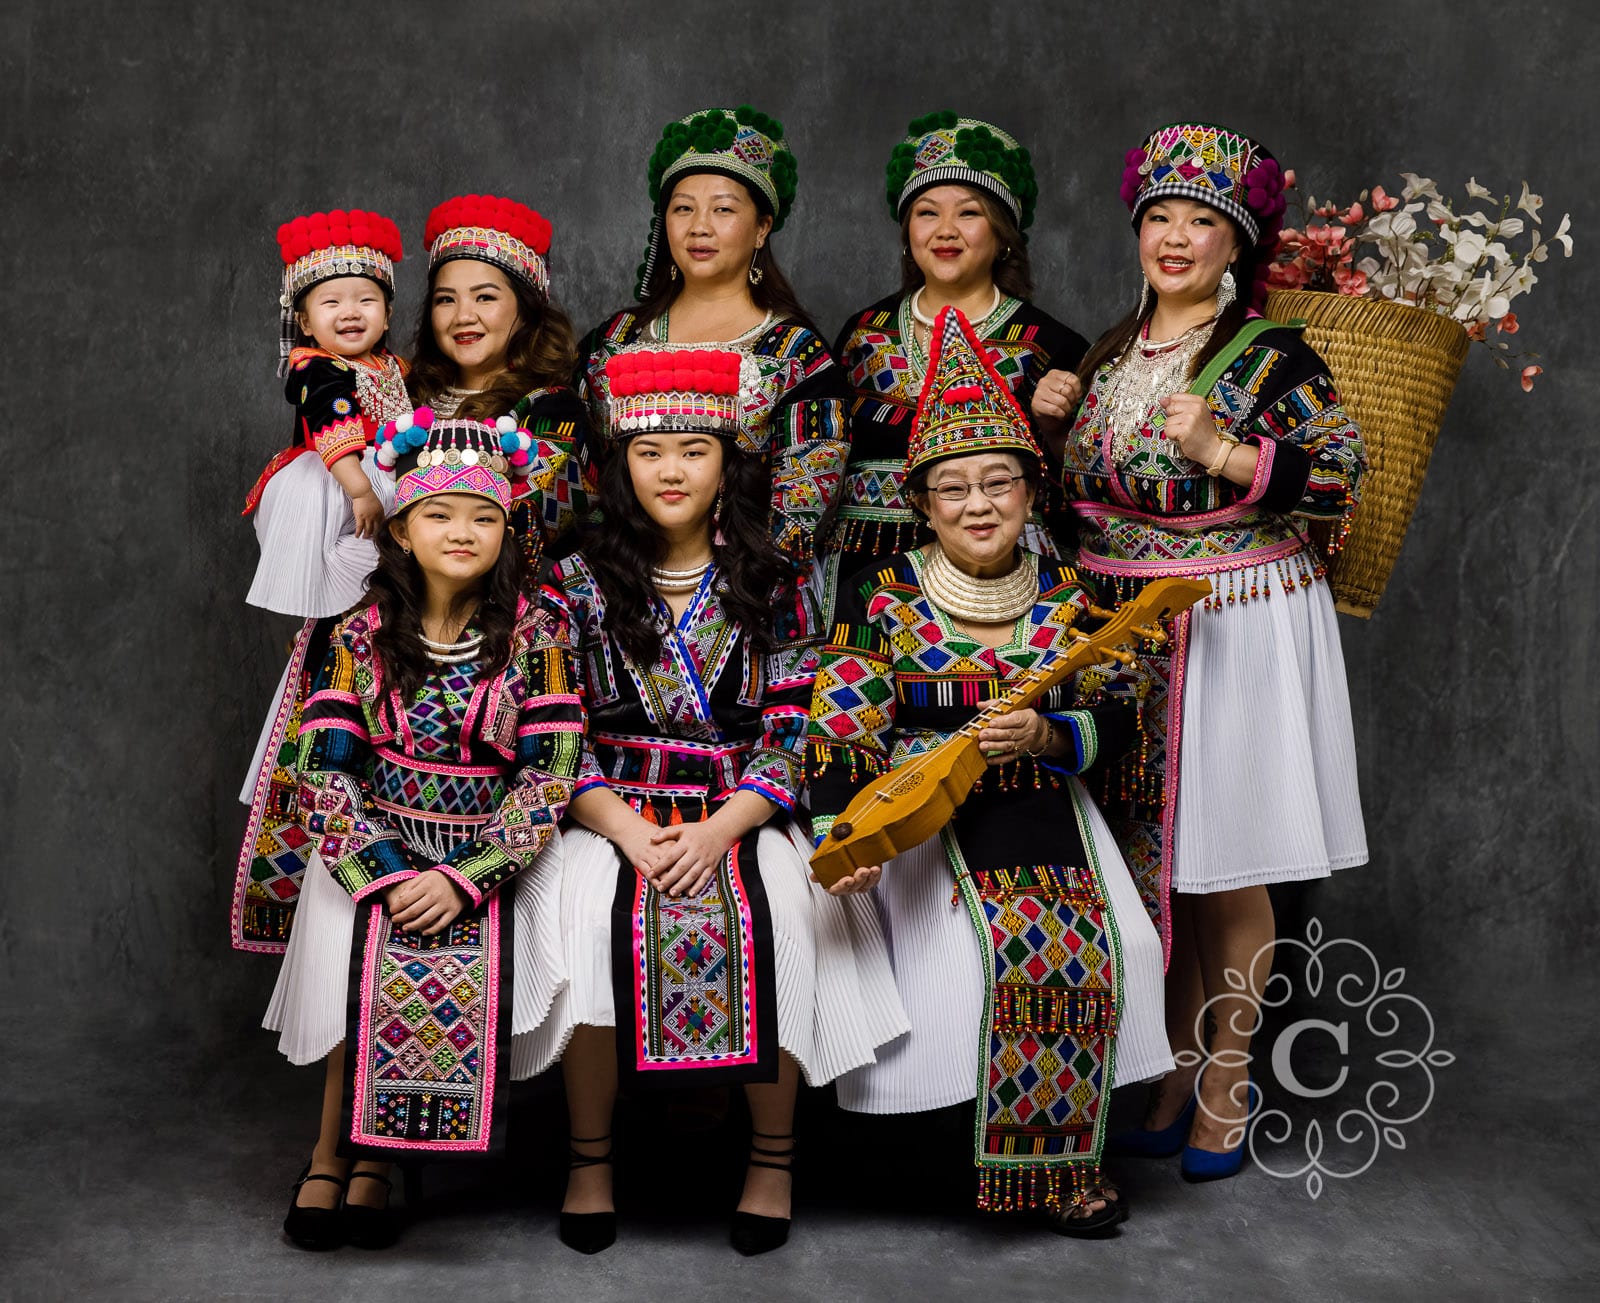 Hmong Culture Clothes